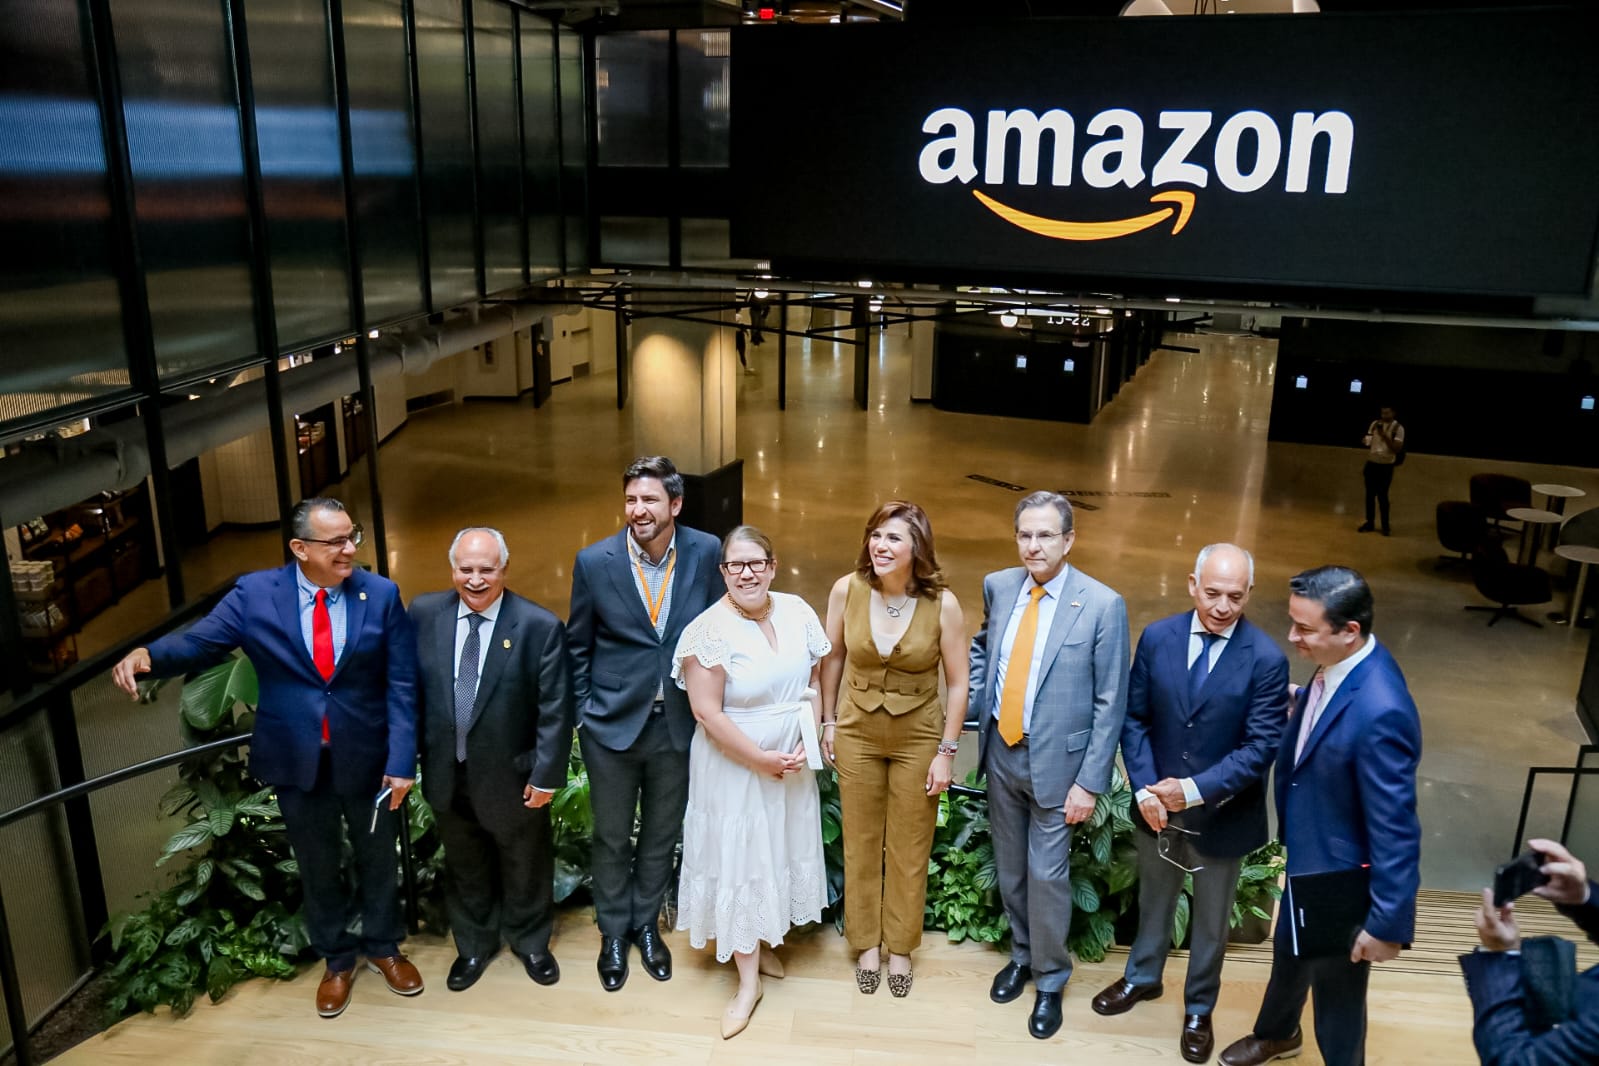 Amazon detonará las ventas de artesanos y pequeñas y medianas empresas de Baja California: Marina del Pilar Ávila